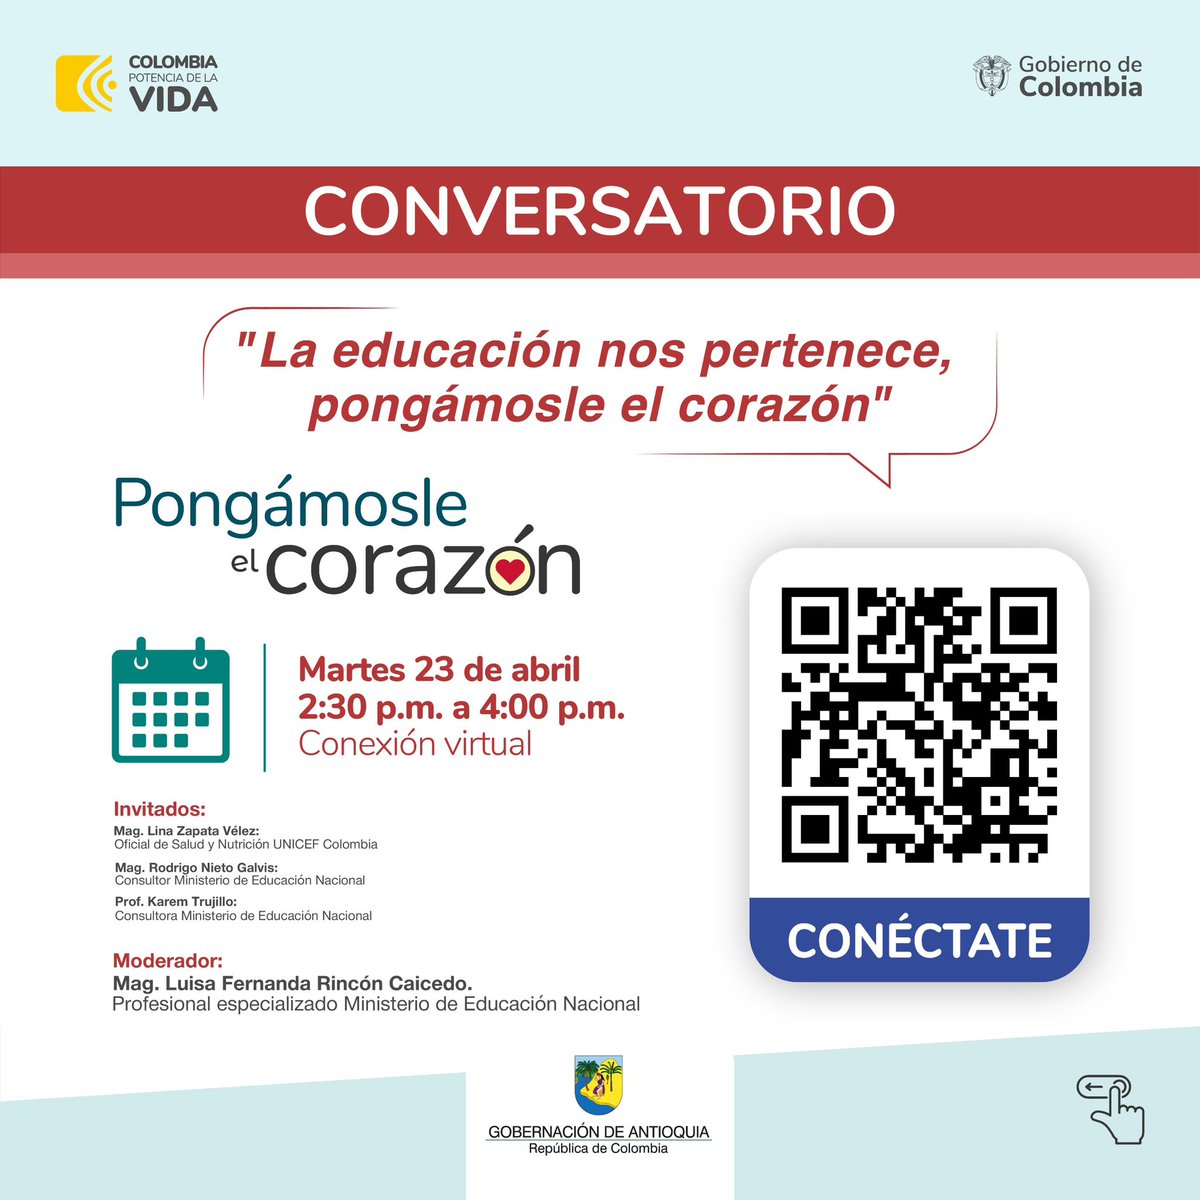 Prográmate en la semana de la seguridad social, escanea el QR y participa en los conversatorios. #pongamosleelcorazon #semanadelaseguridadsocial #saludantioquia